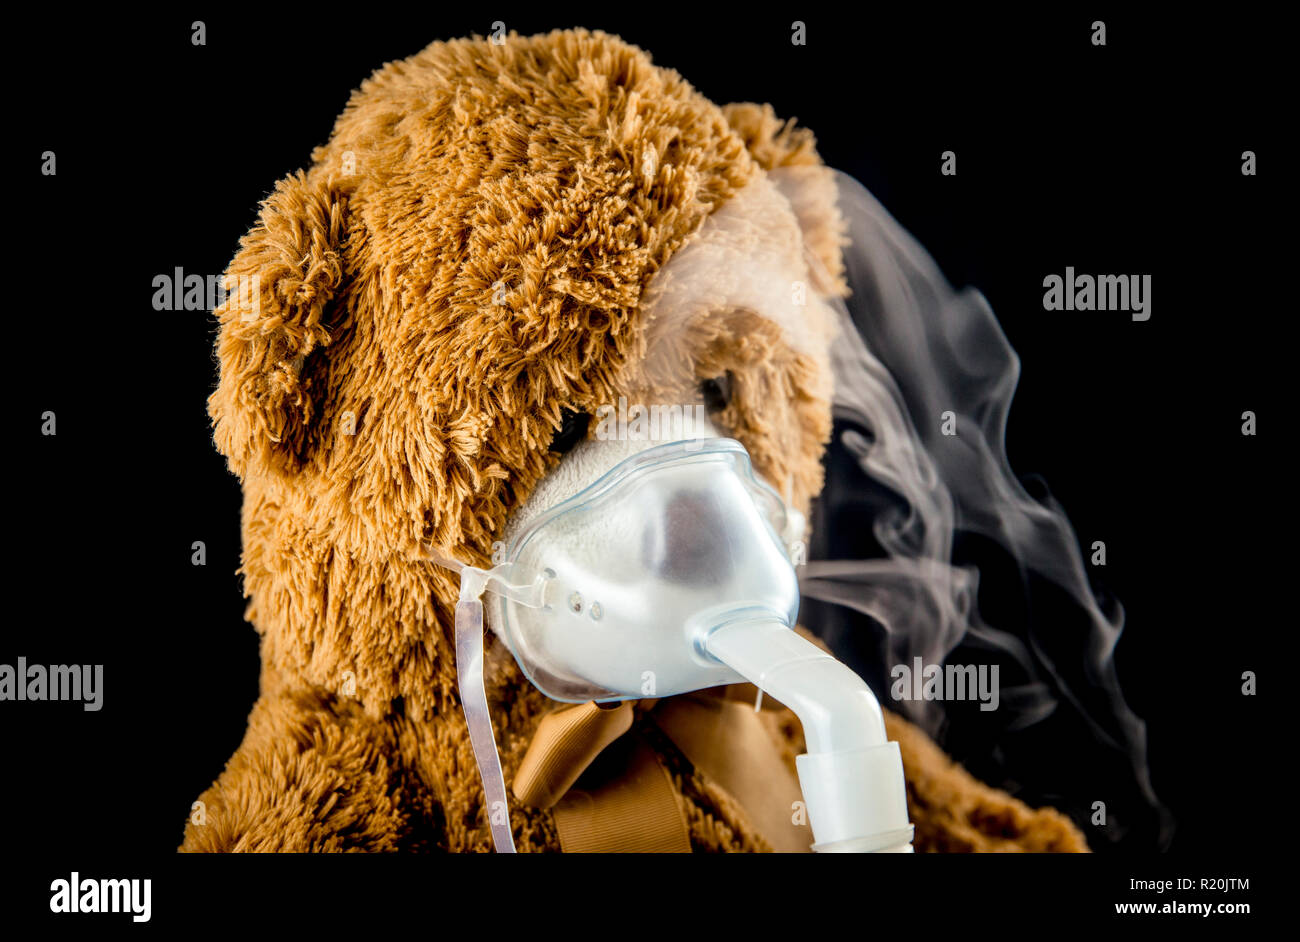 Nebbia di vapore dal nebulizzatore o nebulizzatore macchina elettrica dispositivo di erogazione di farmaco utilizzato per somministrare il farmaco in forma di nebbia inalata nei lu Foto Stock